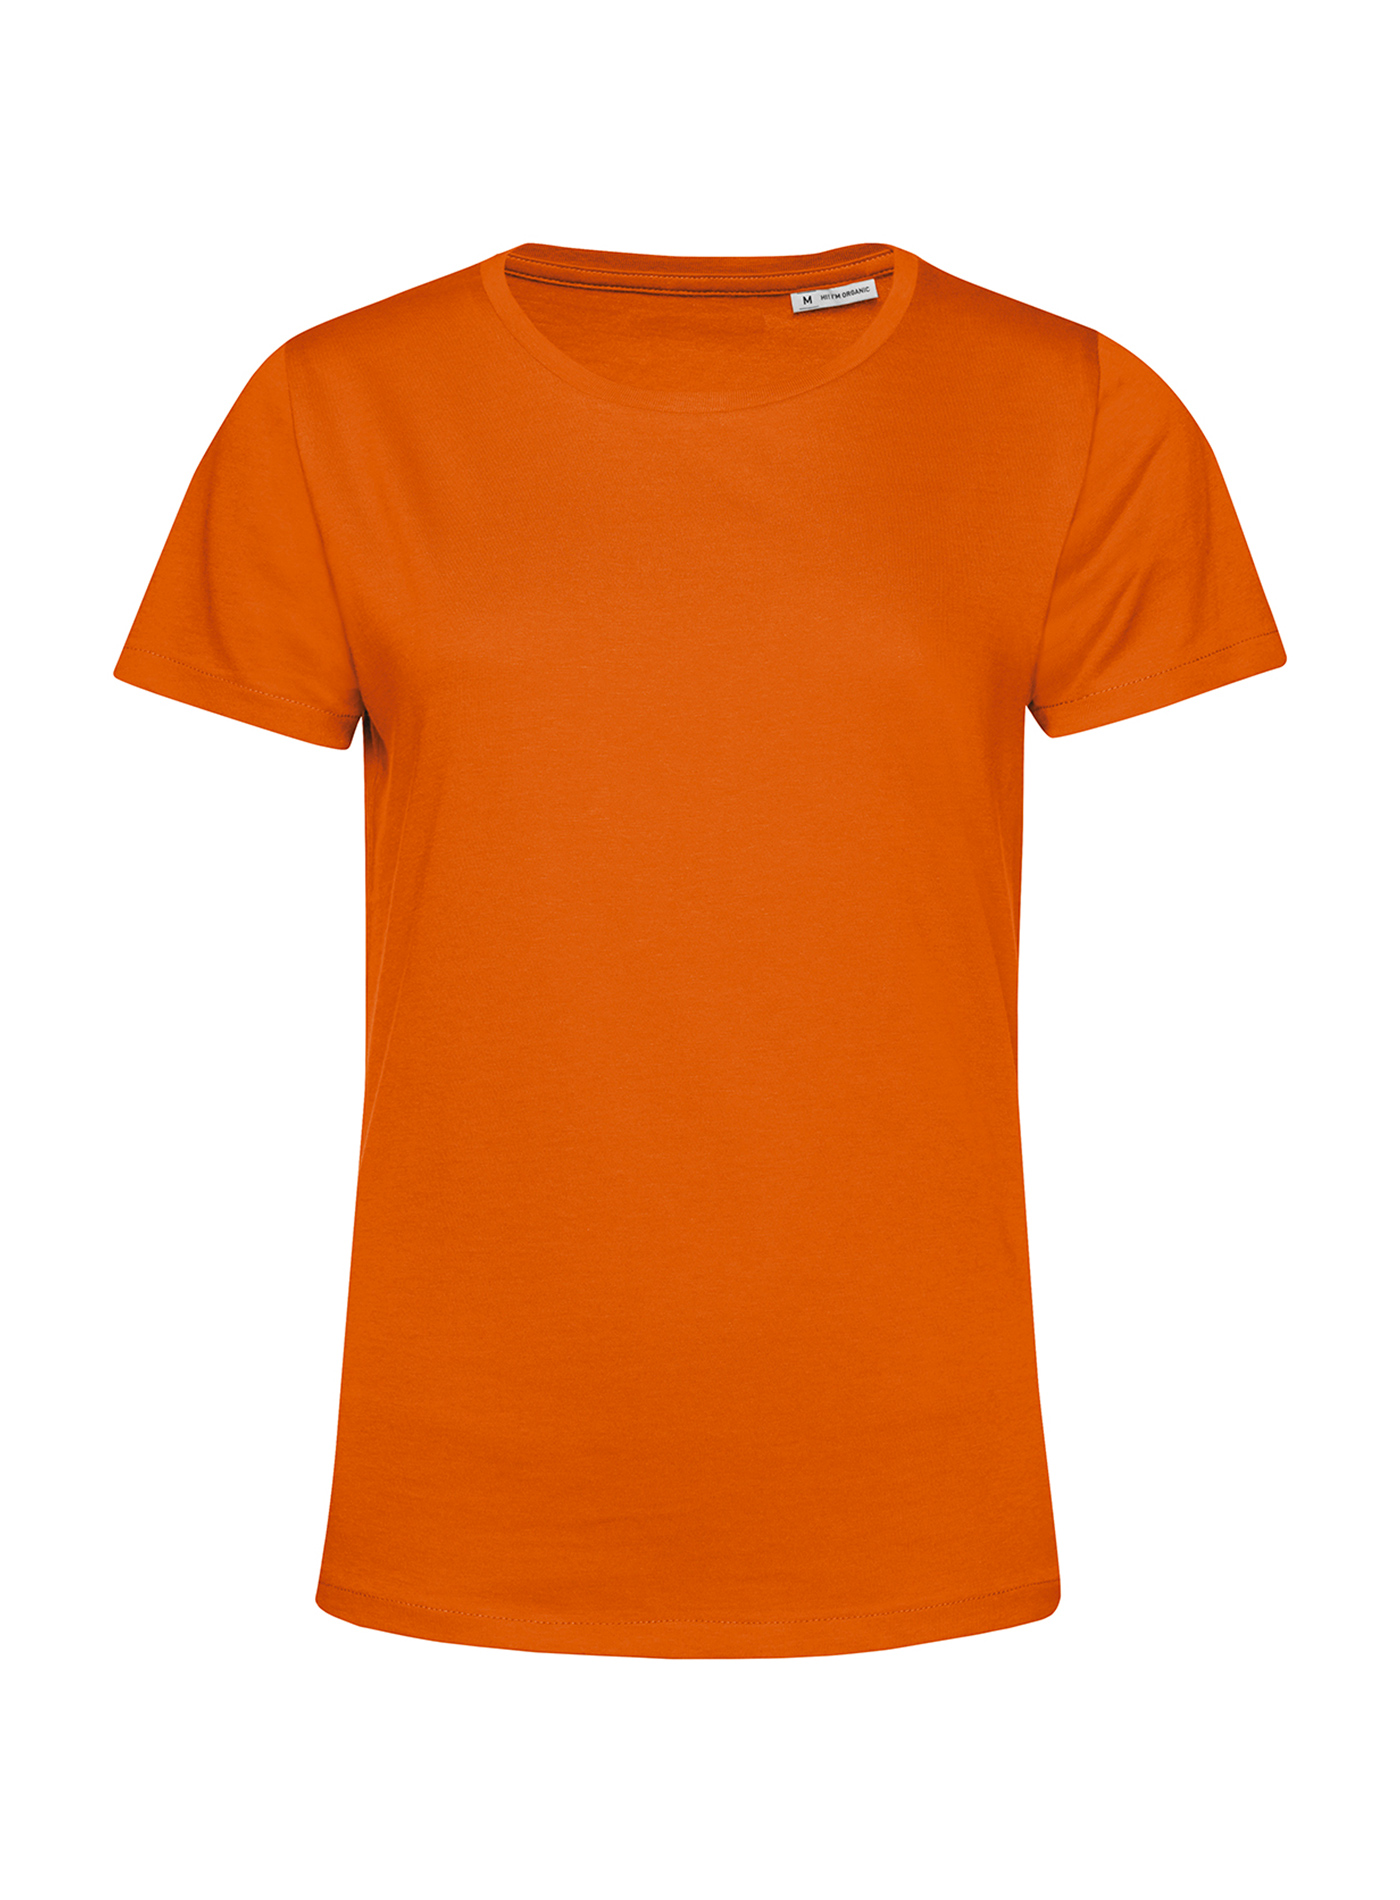 Dámské tričko B&C Collection Organic - Oranžová M